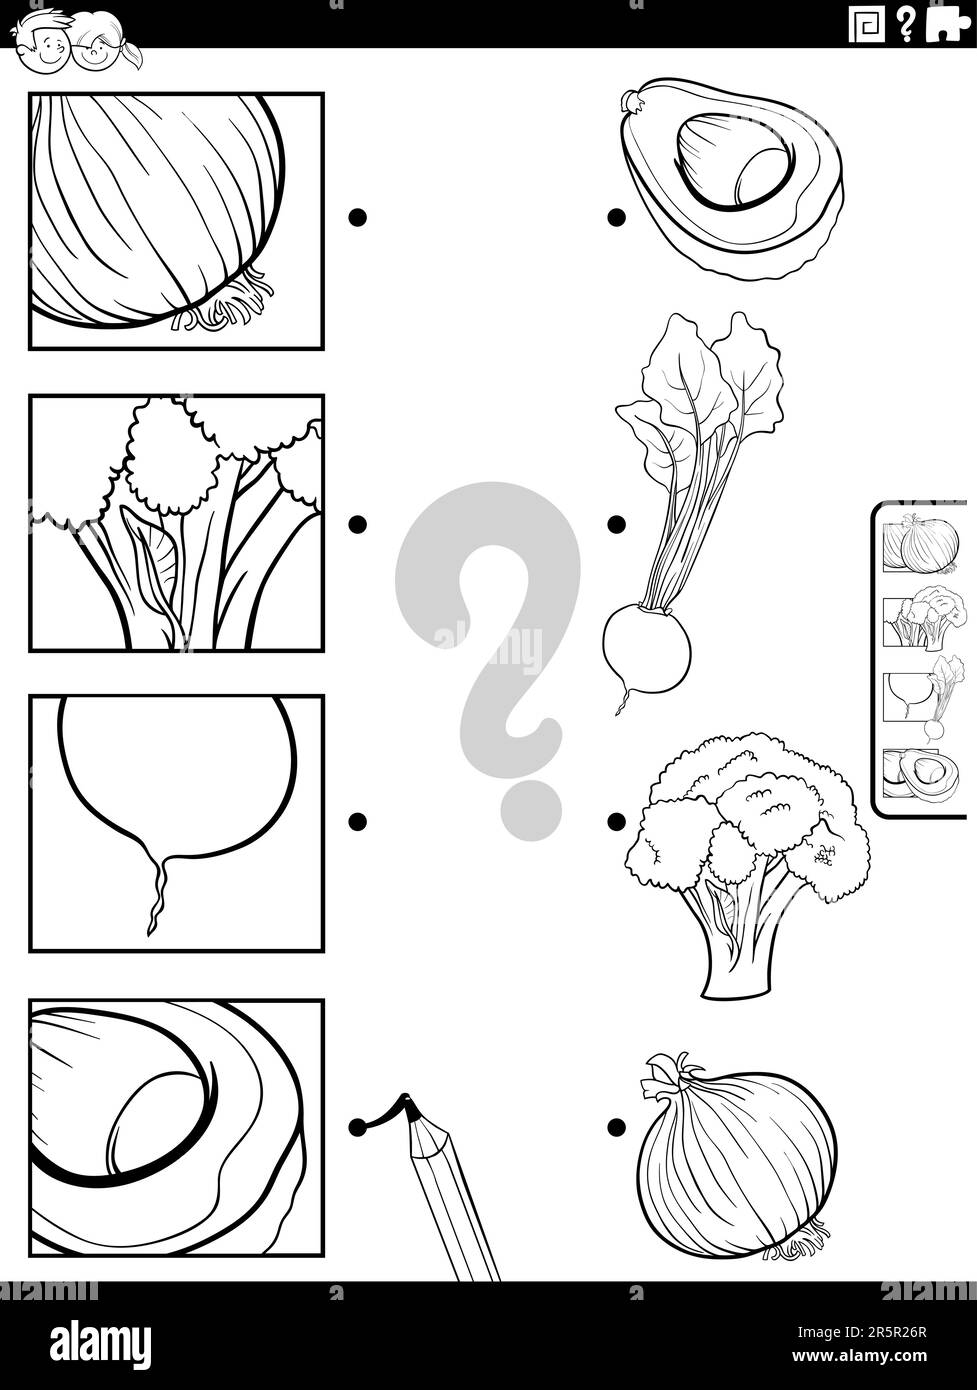 Schwarz-weißer Cartoon Darstellung der pädagogischen Aktivität, die mit Obst und Gemüse und Bildern zusammenpasst Malseite für Ausschnitte Stock Vektor